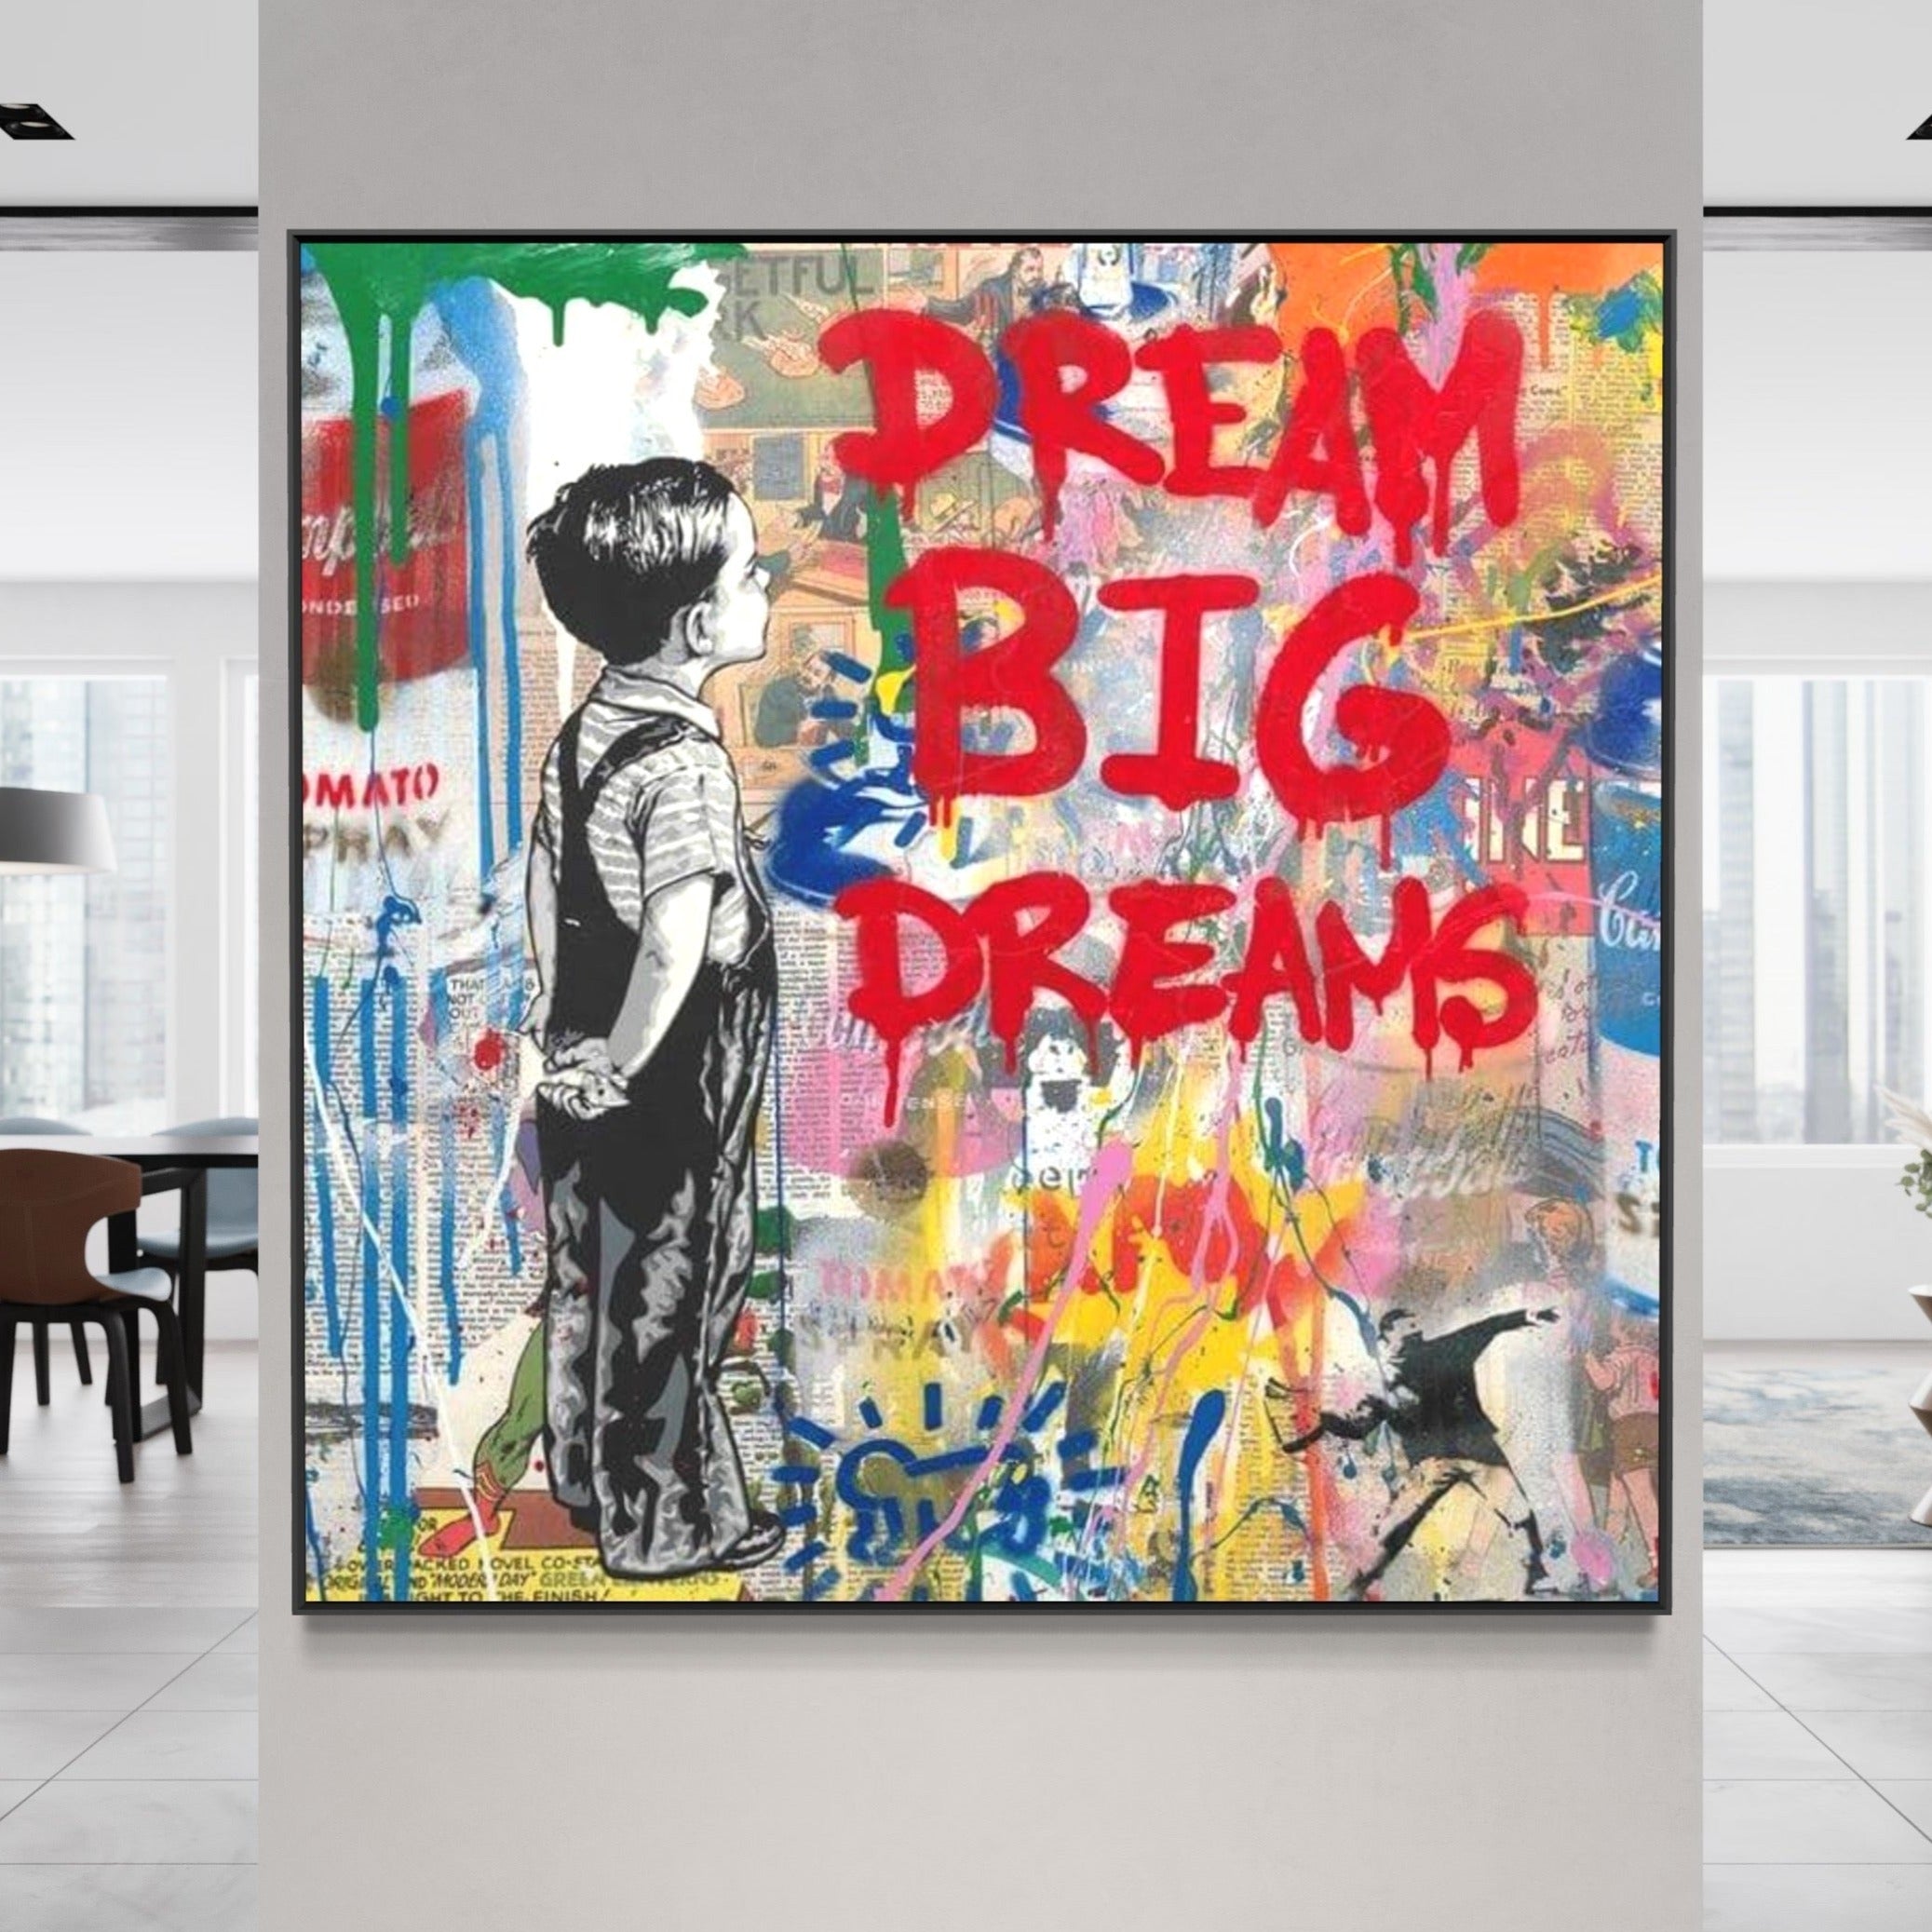 Banksy Dream Big Dreams Graffiti Art 100% Hand-Painted Reproduction